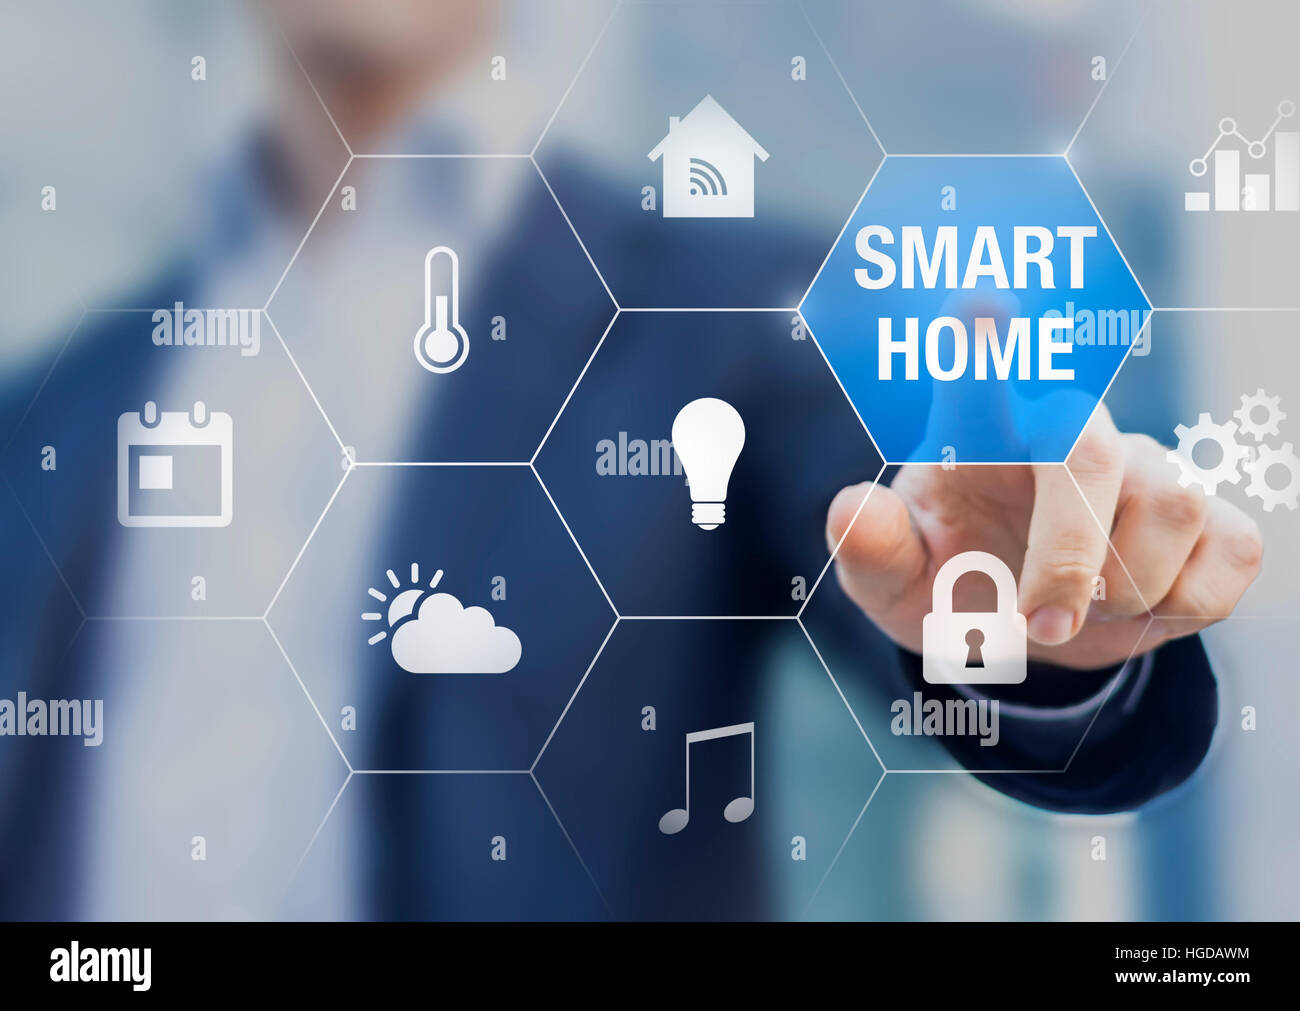 Concepto de automatización del hogar inteligente con los iconos que muestran las funcionalidades de esta nueva tecnología y una persona tocando un botón Foto de stock